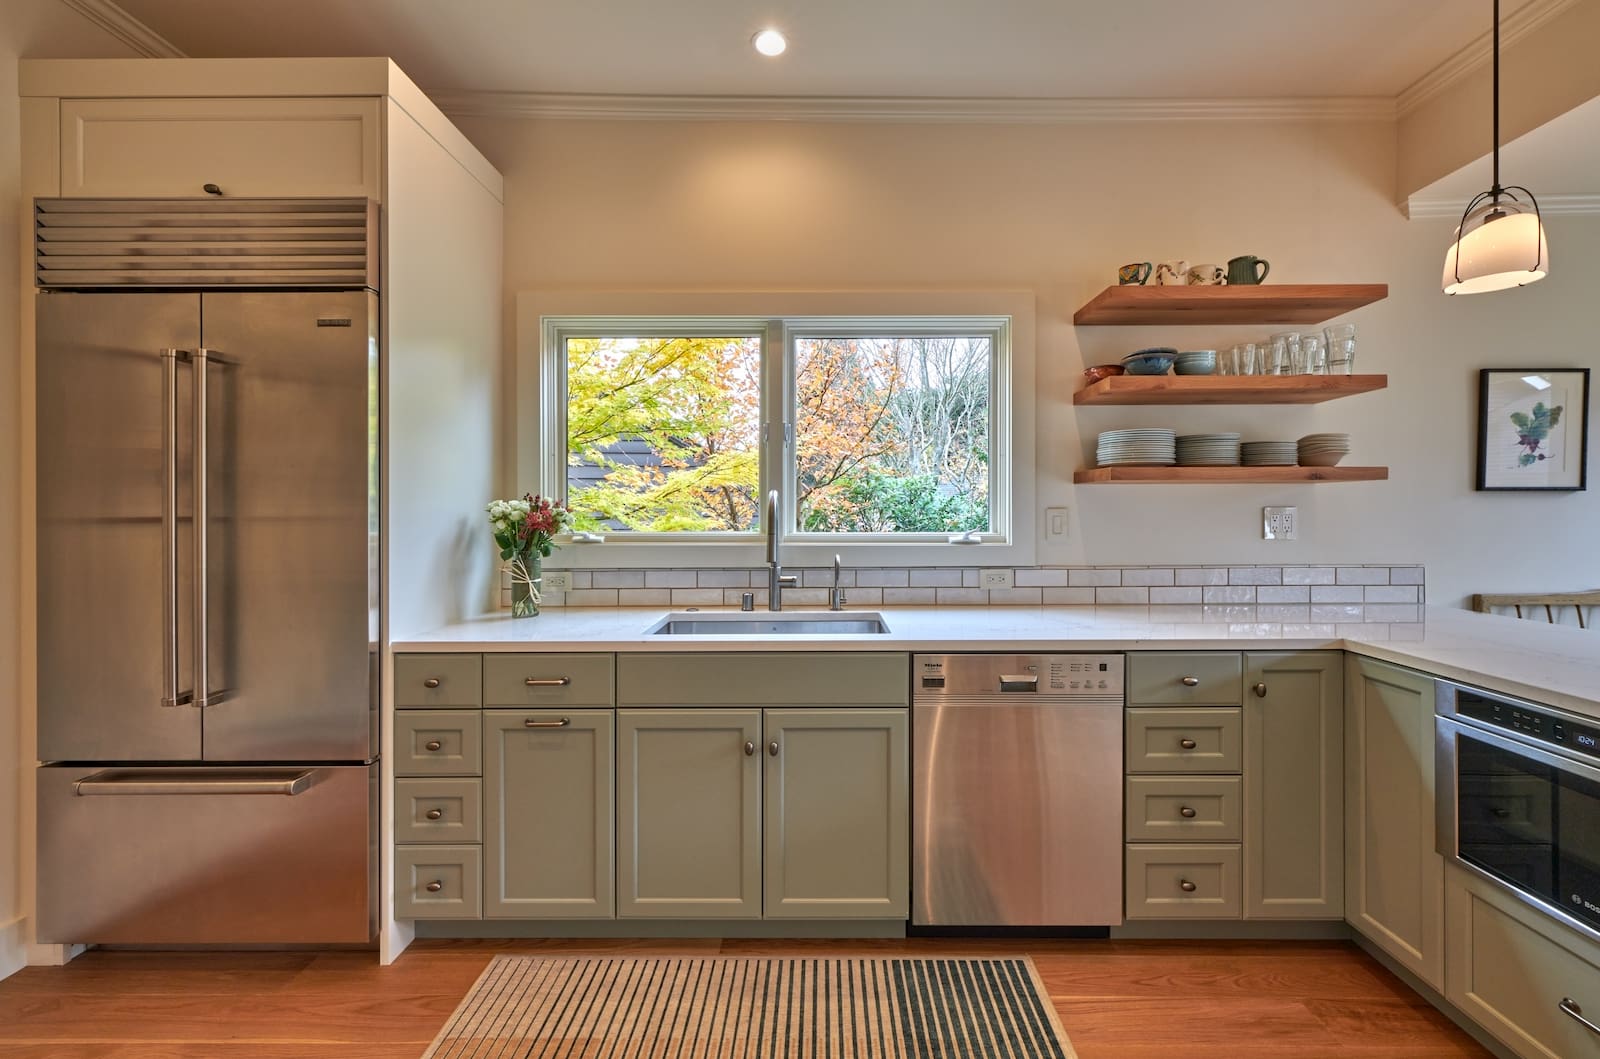 magnolia design small kitchen remodel